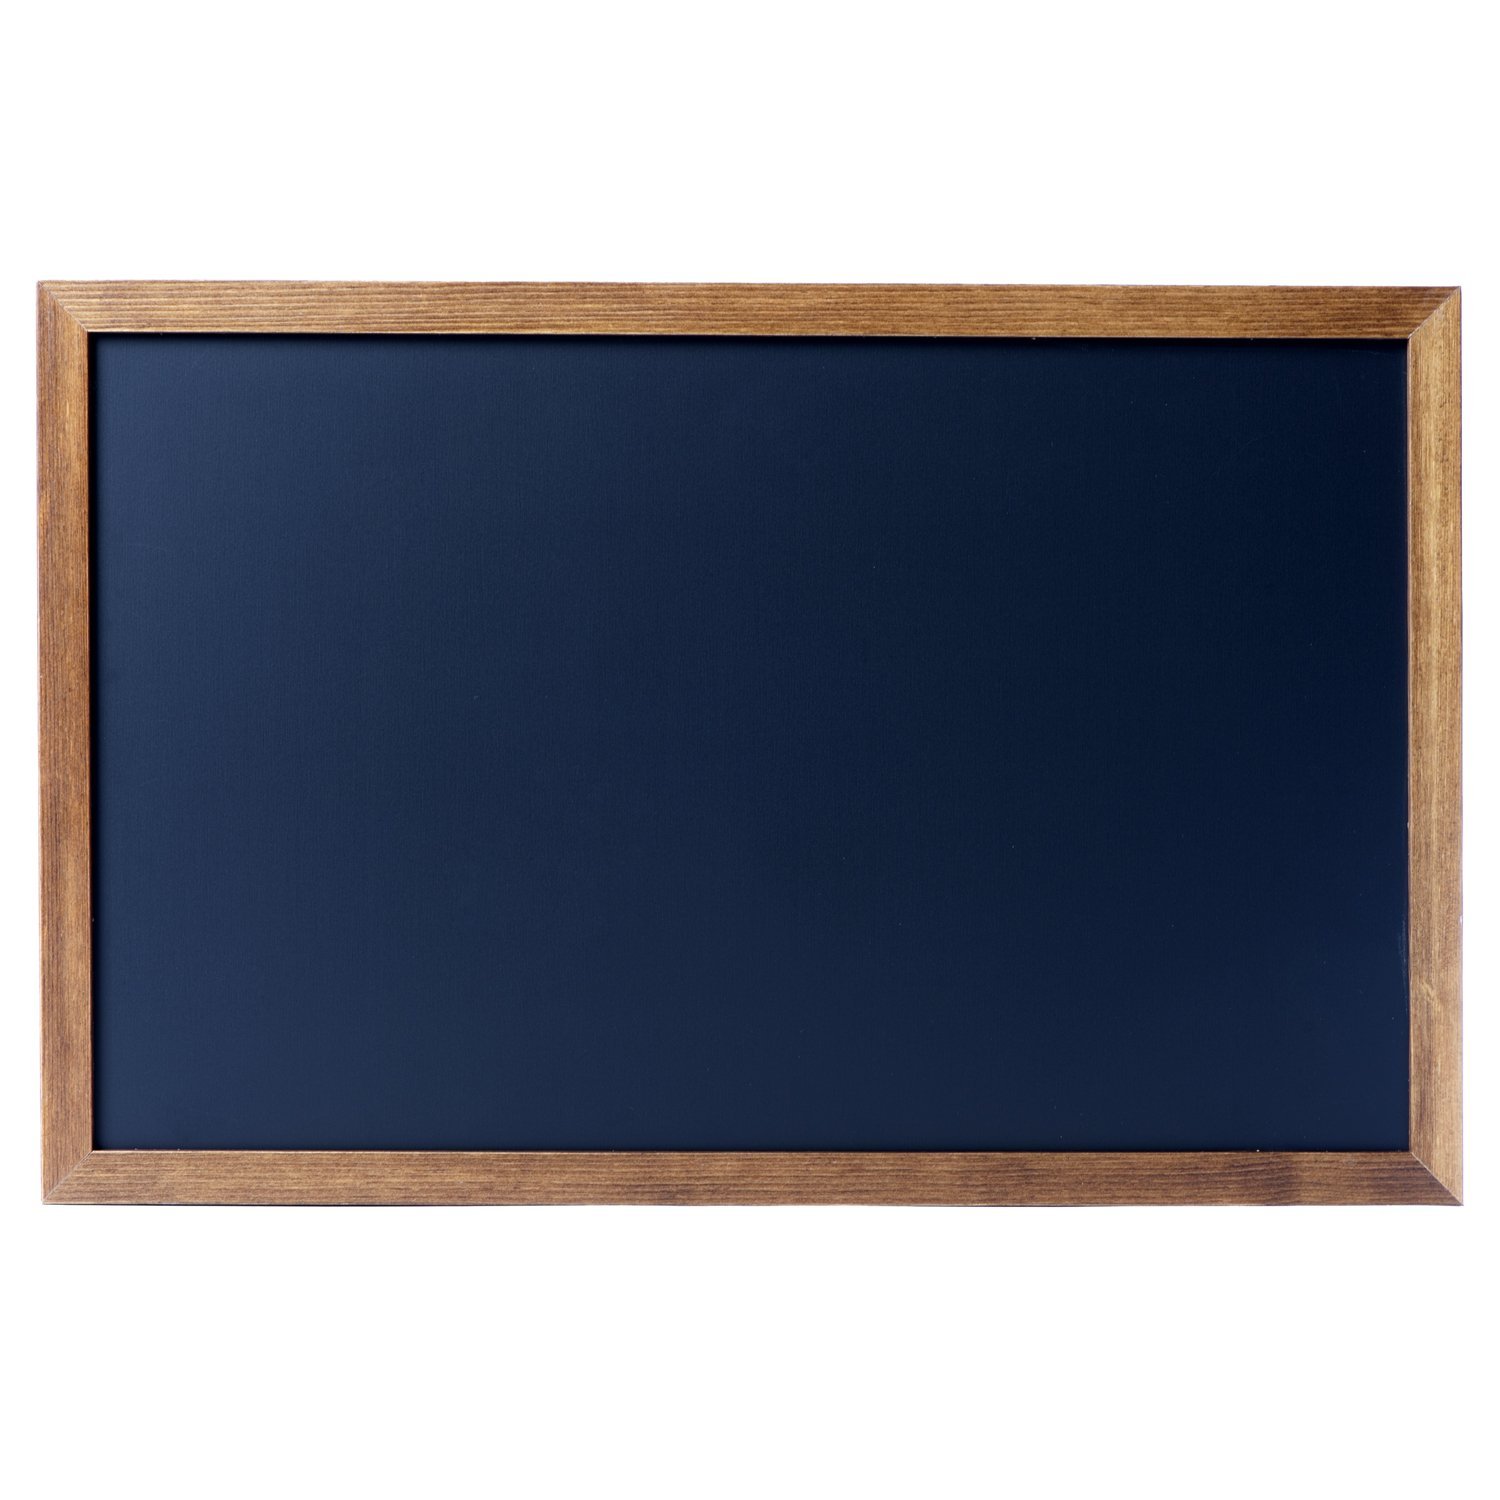 27”x20” Chalkboard. Magnetic Blackboard and Whiteboard sides - Cedar ...